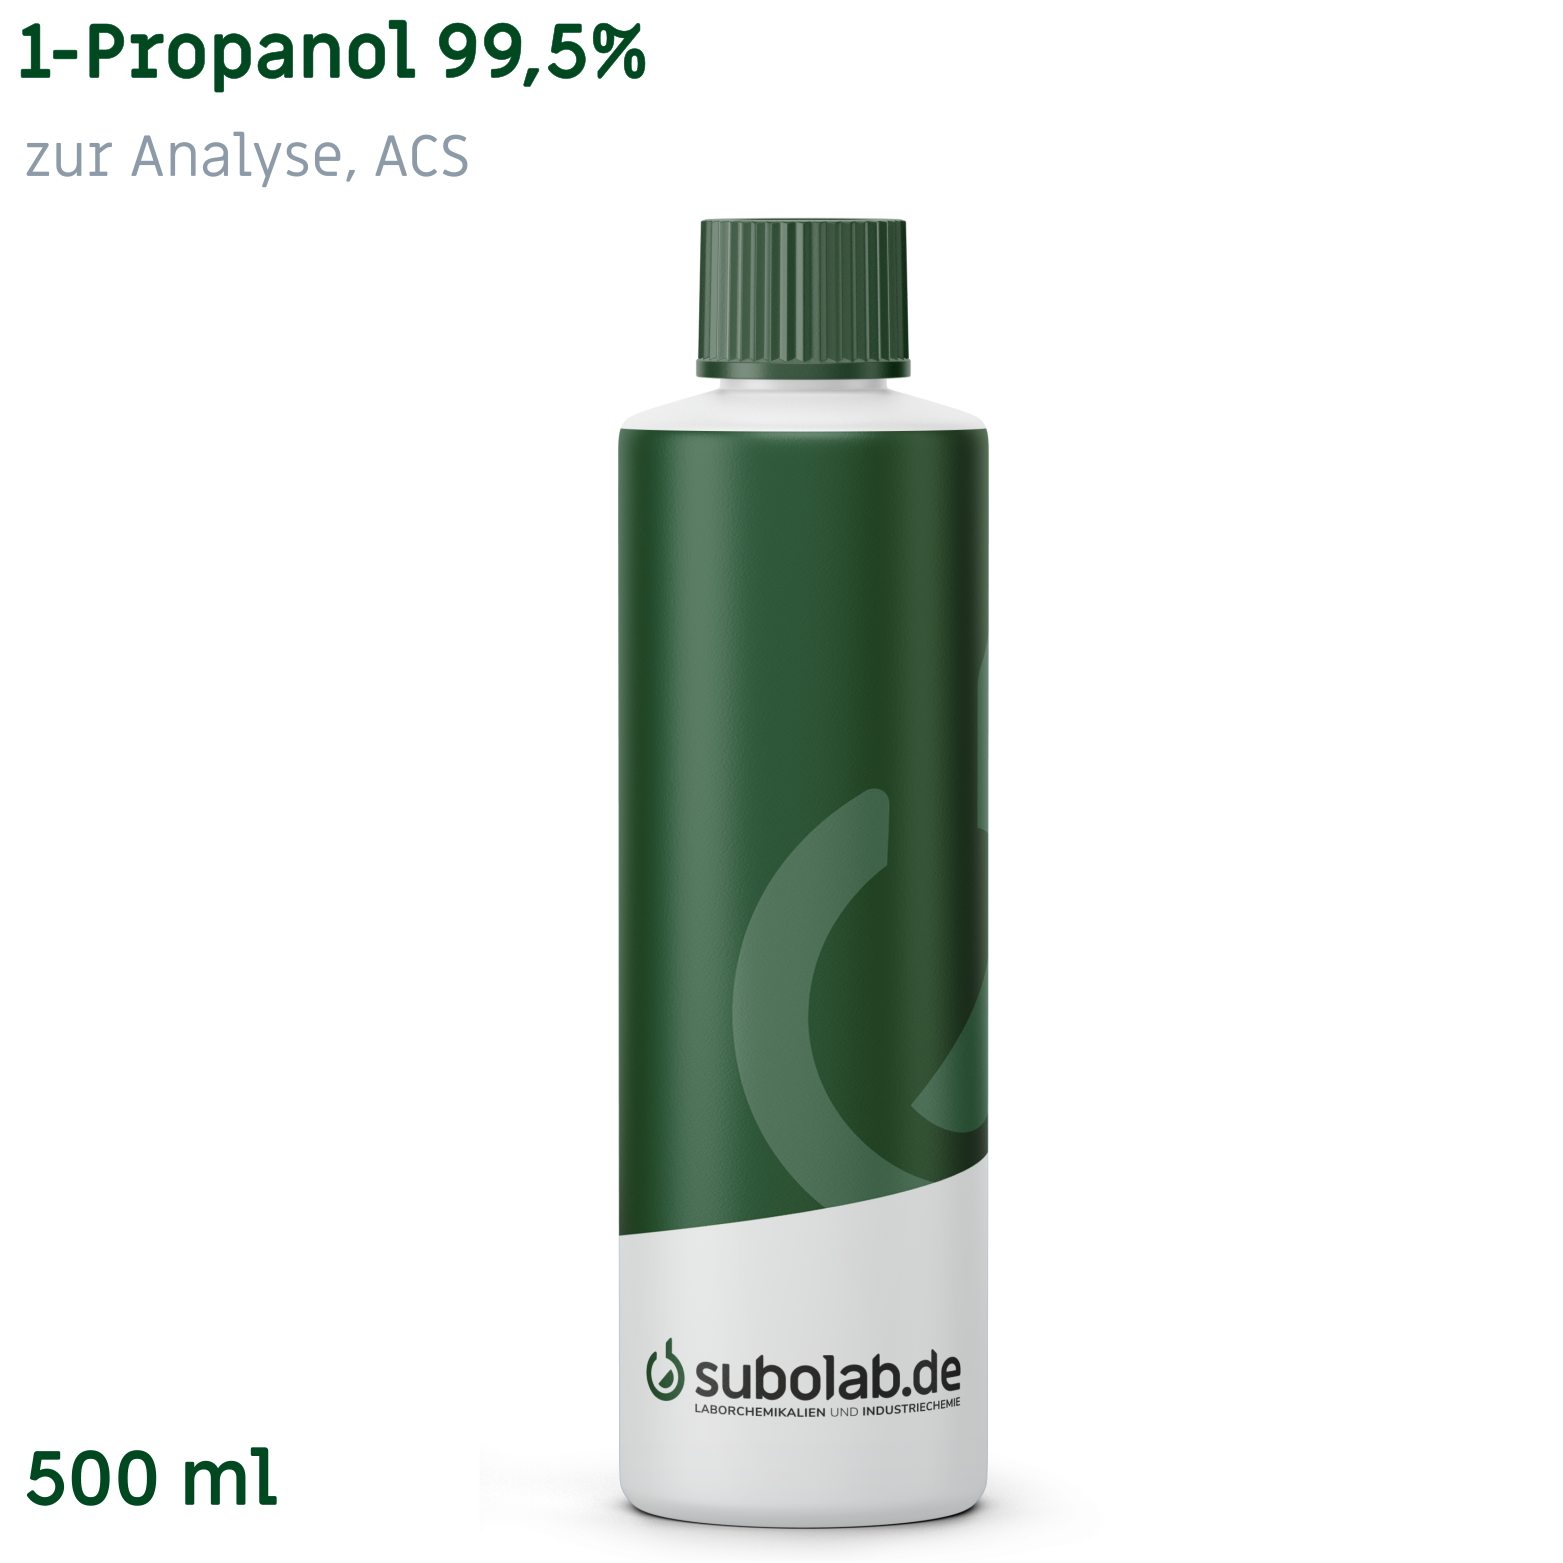 Bild von 1-Propanol 99,5% zur Analyse, ACS (500 ml)